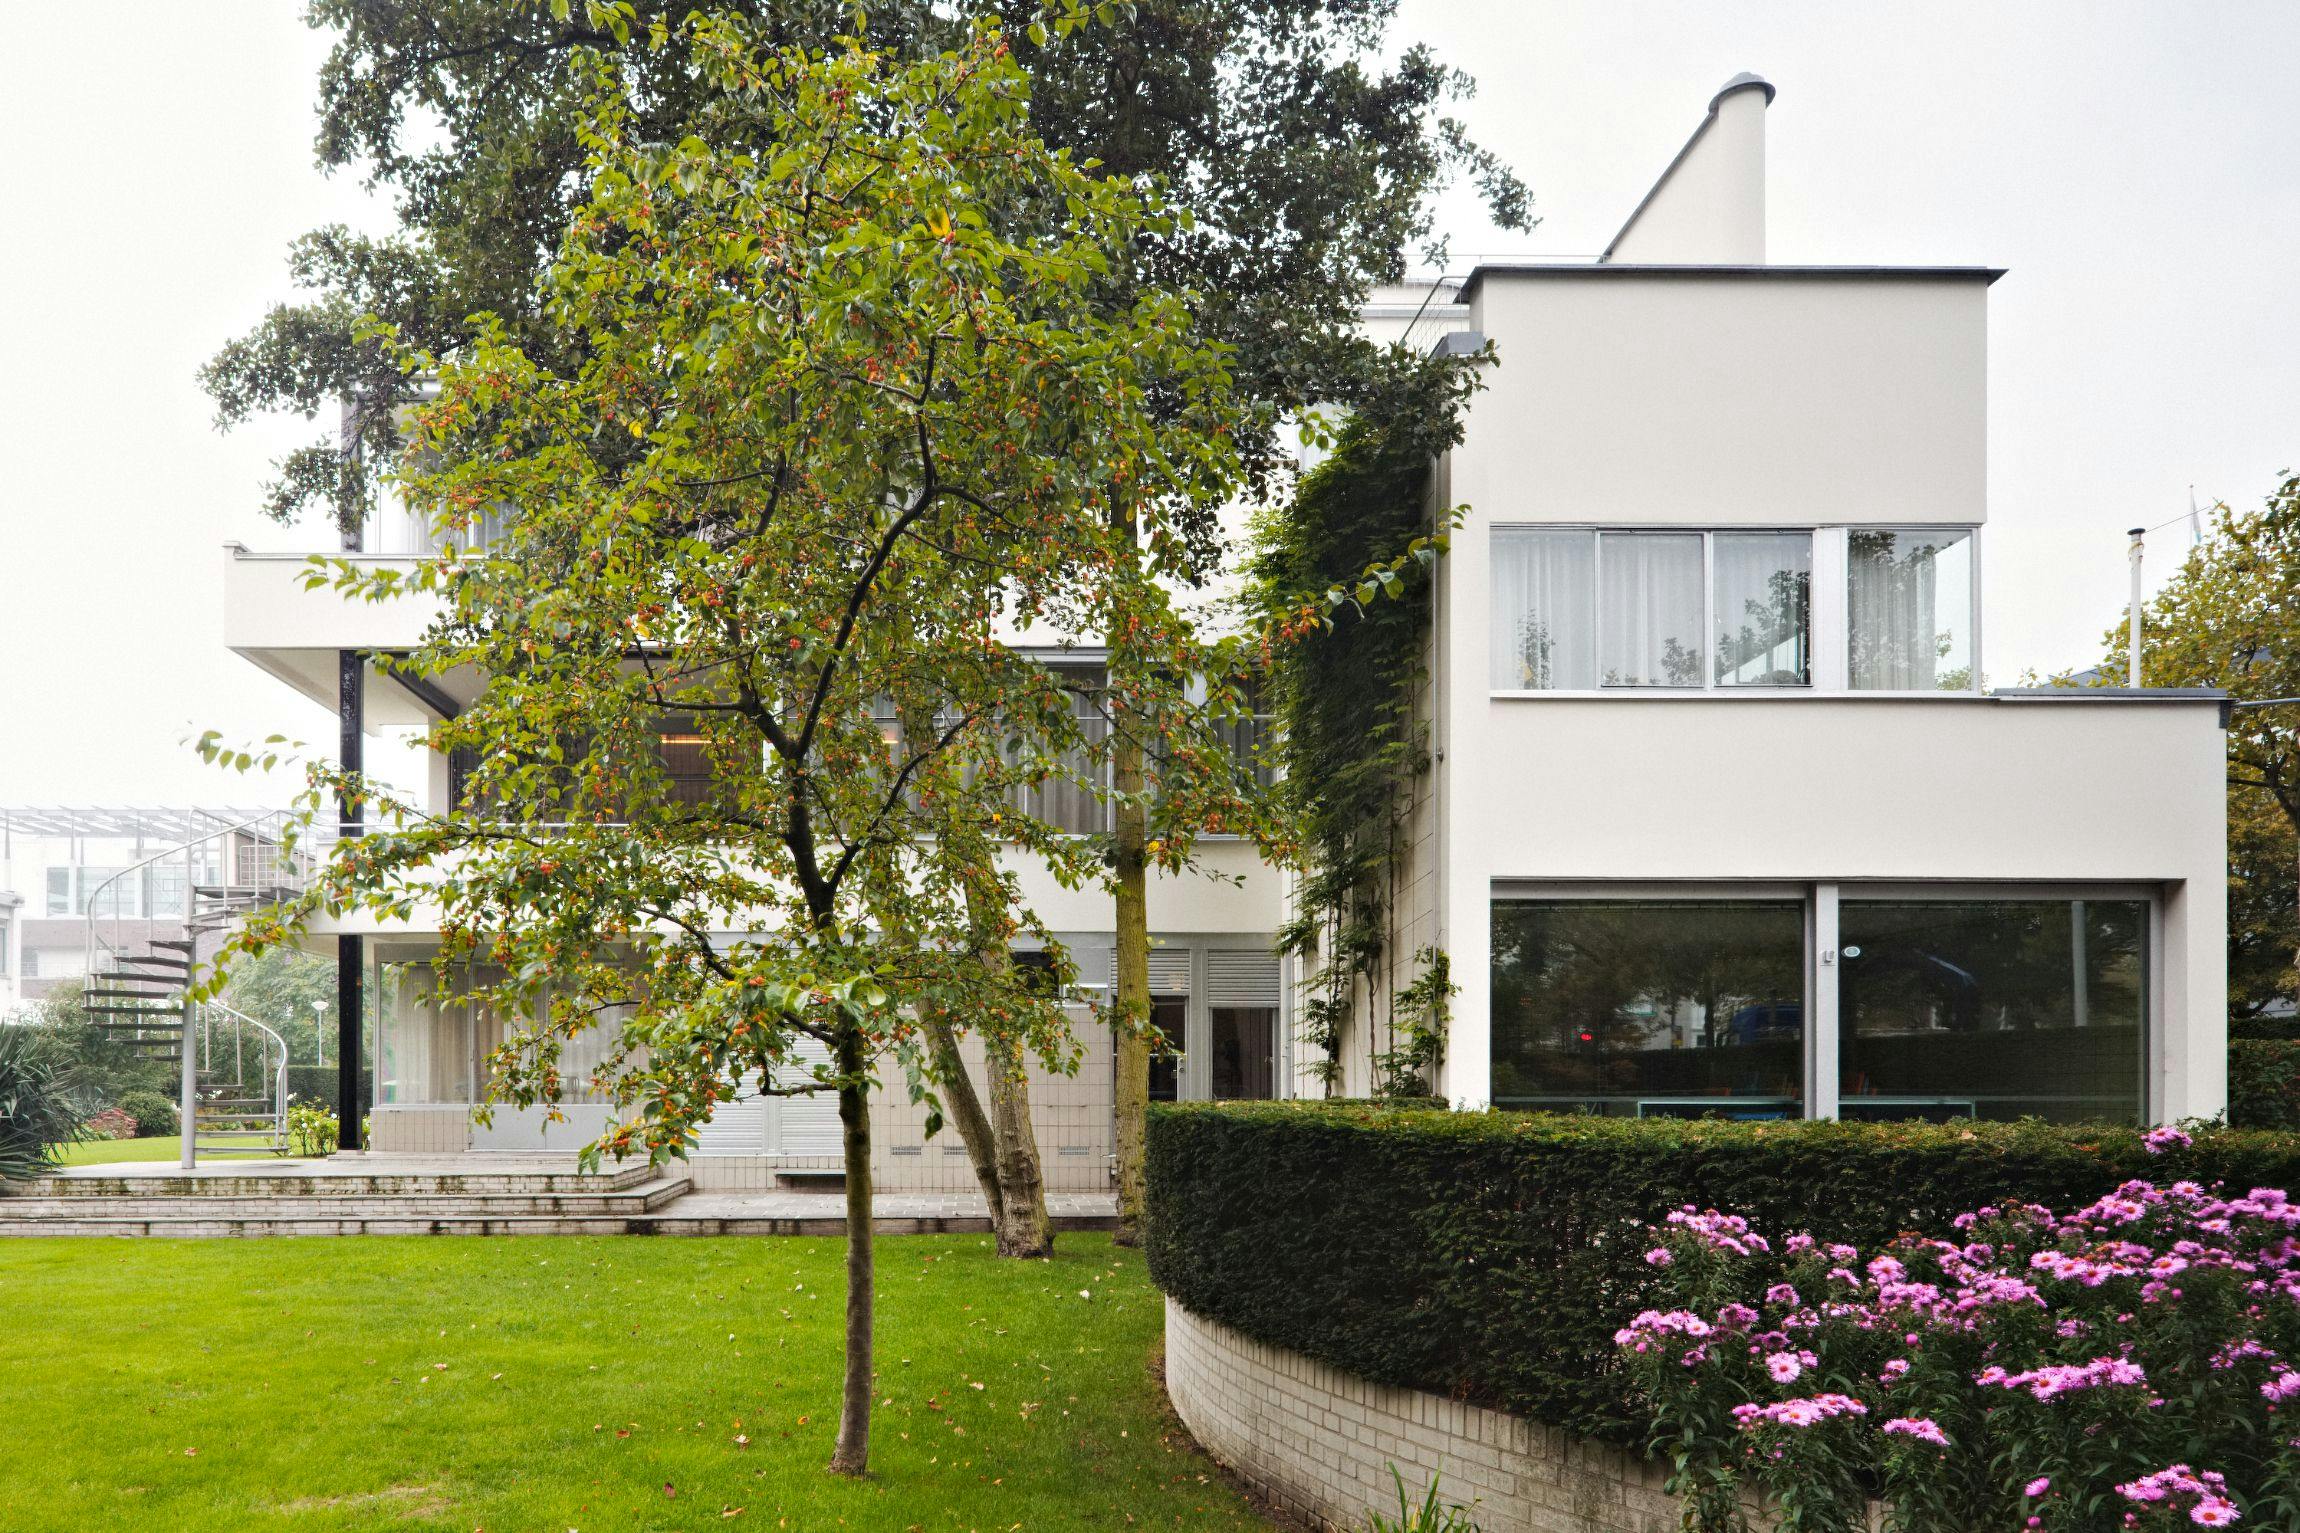 Huis Sonneveld, exterieur en tuin. Architectuur door Brinkman en Van der Vlugt. Foto Johannes Schwartz 